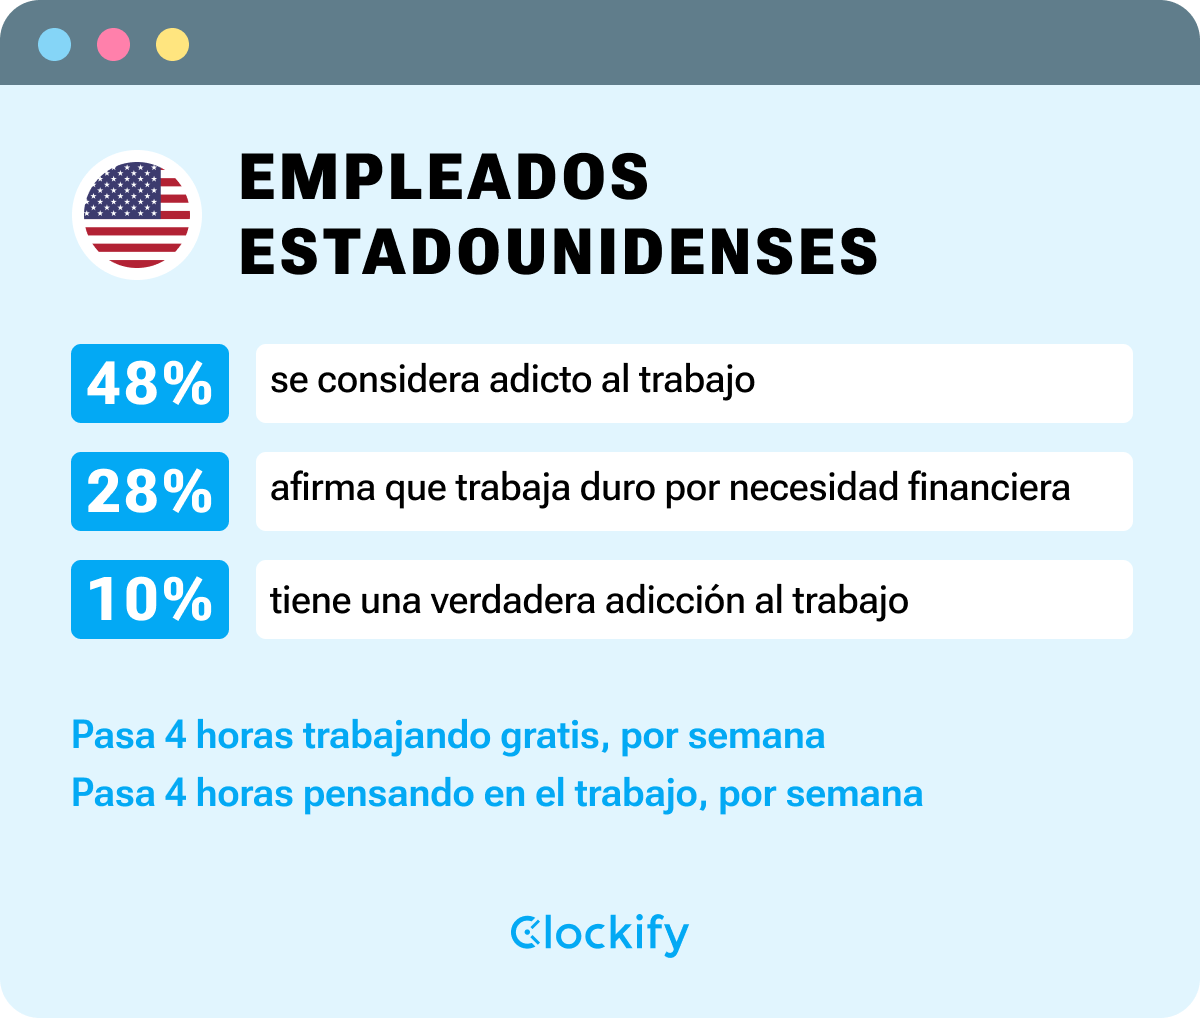 Empleados estadounidenses - infografía